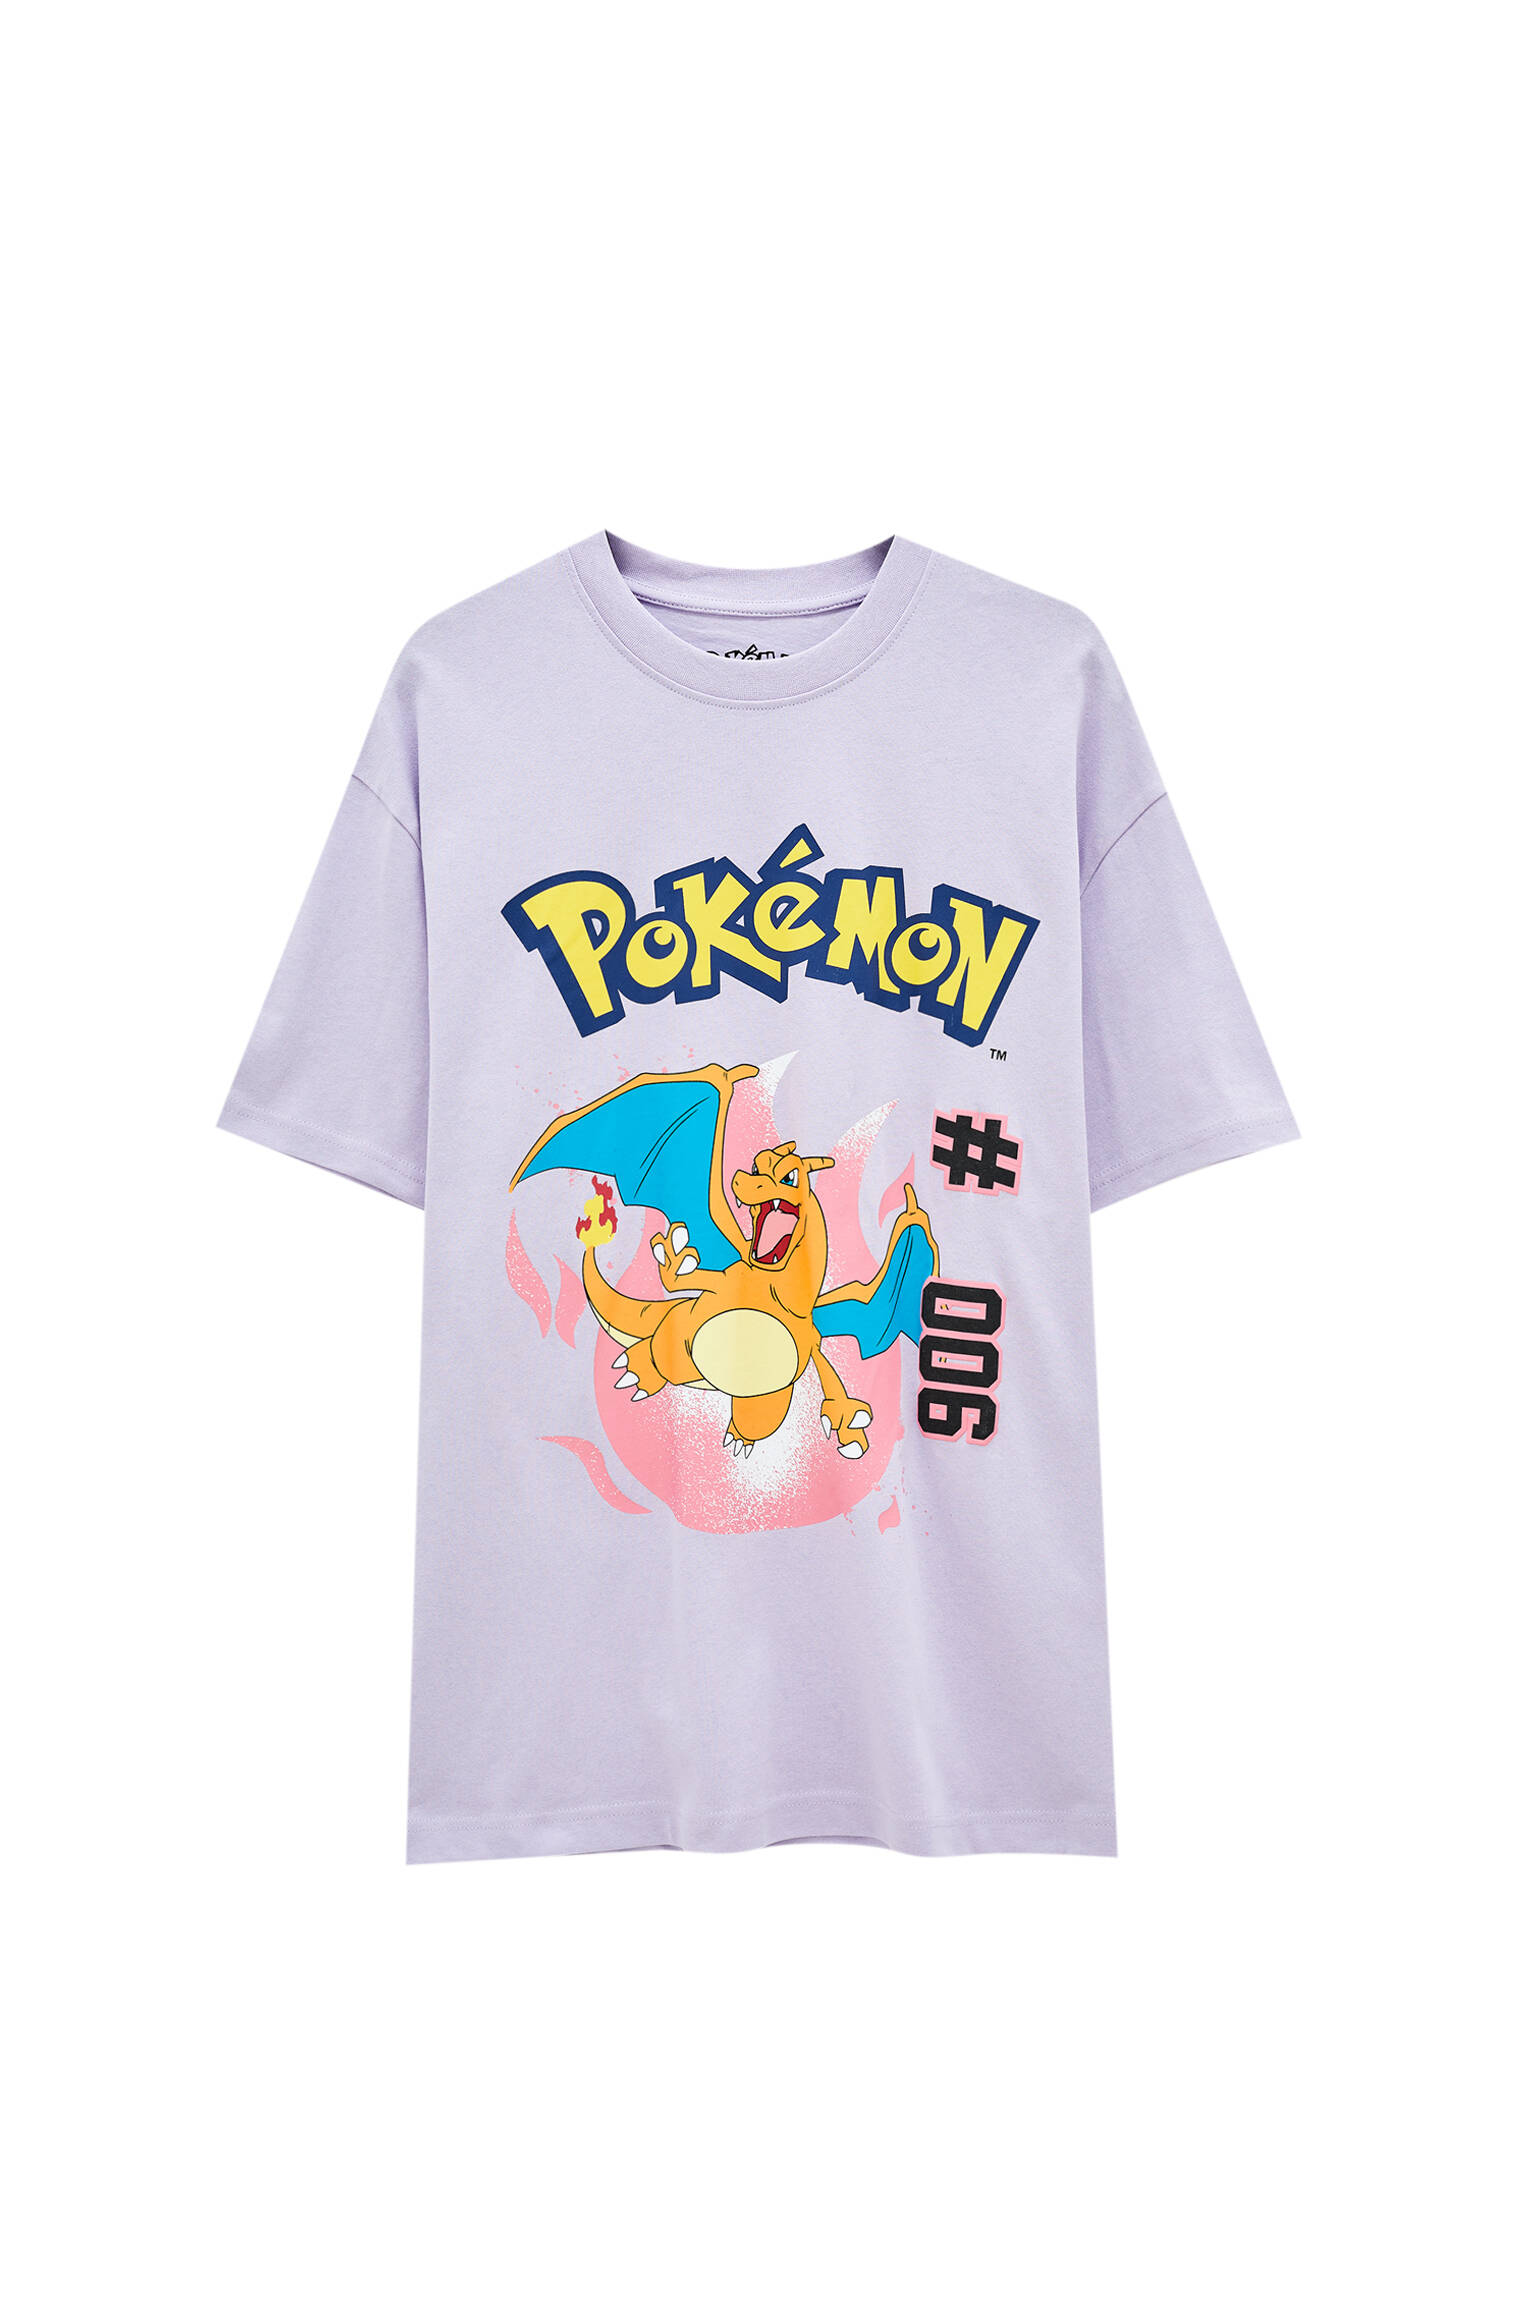 Pull&bear Homme T-shirt Lilas 100 % Coton à Manches Courtes Et Col Rond, Avec Illustration Du Personnage De Pokémon Charizard. Violet S